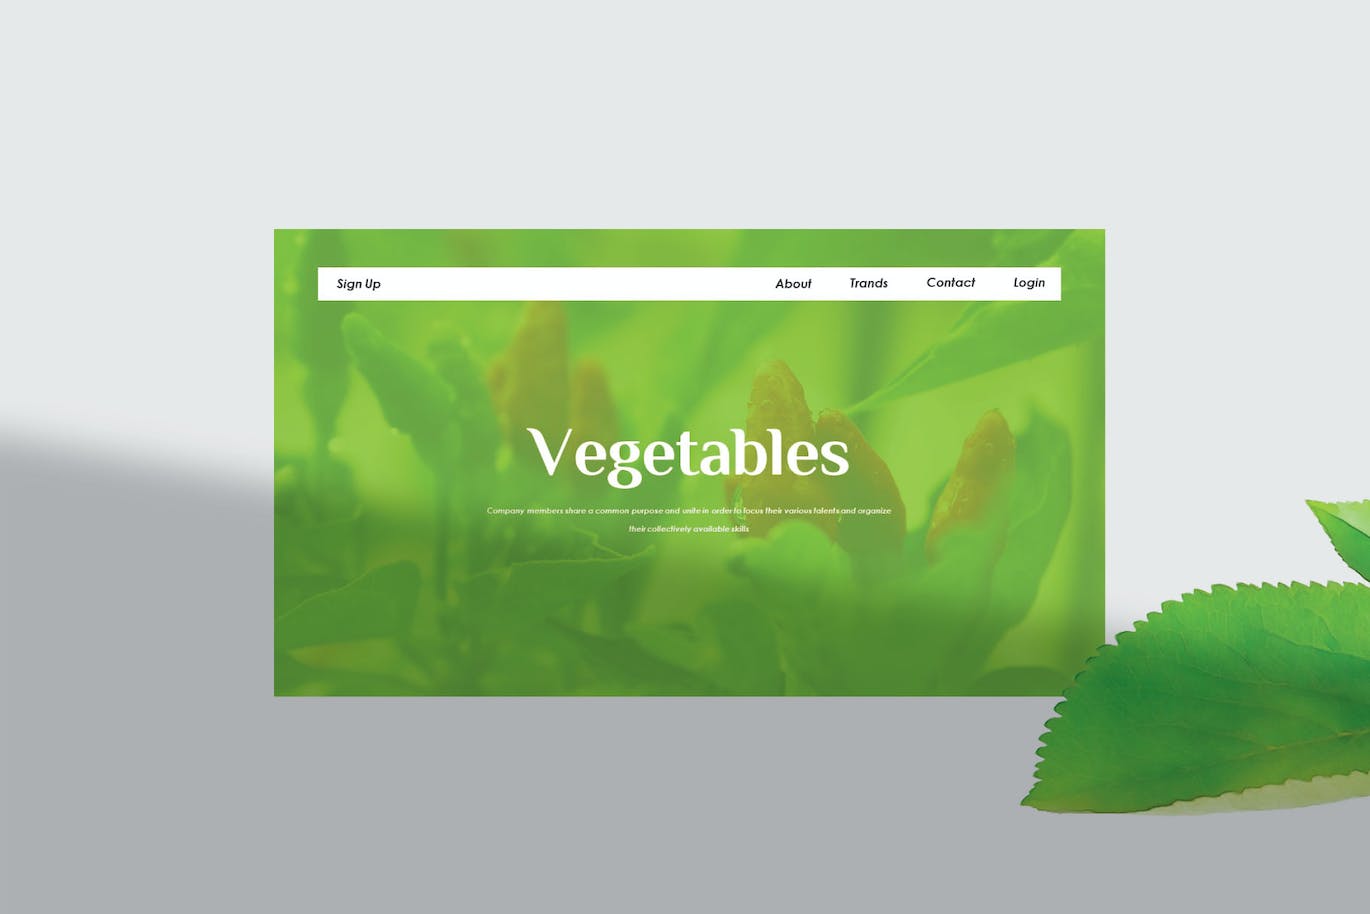 蔬菜农产品Google幻灯片设计模板 Vegetables – Google Slide Template 幻灯图表 第6张